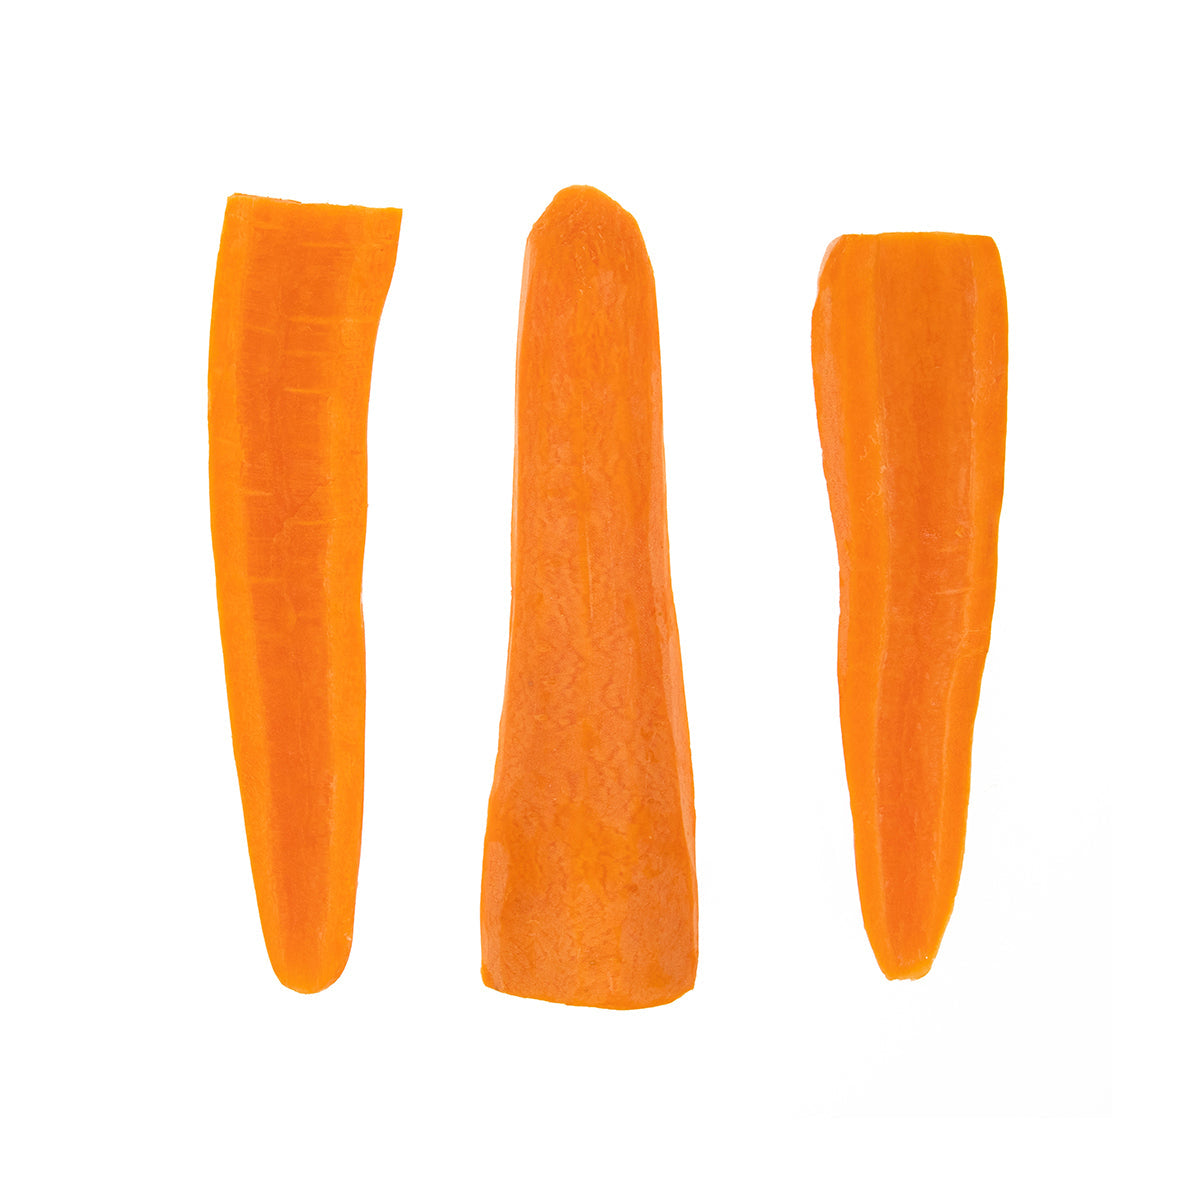 BoxNCase Halved Carrots 5 LB